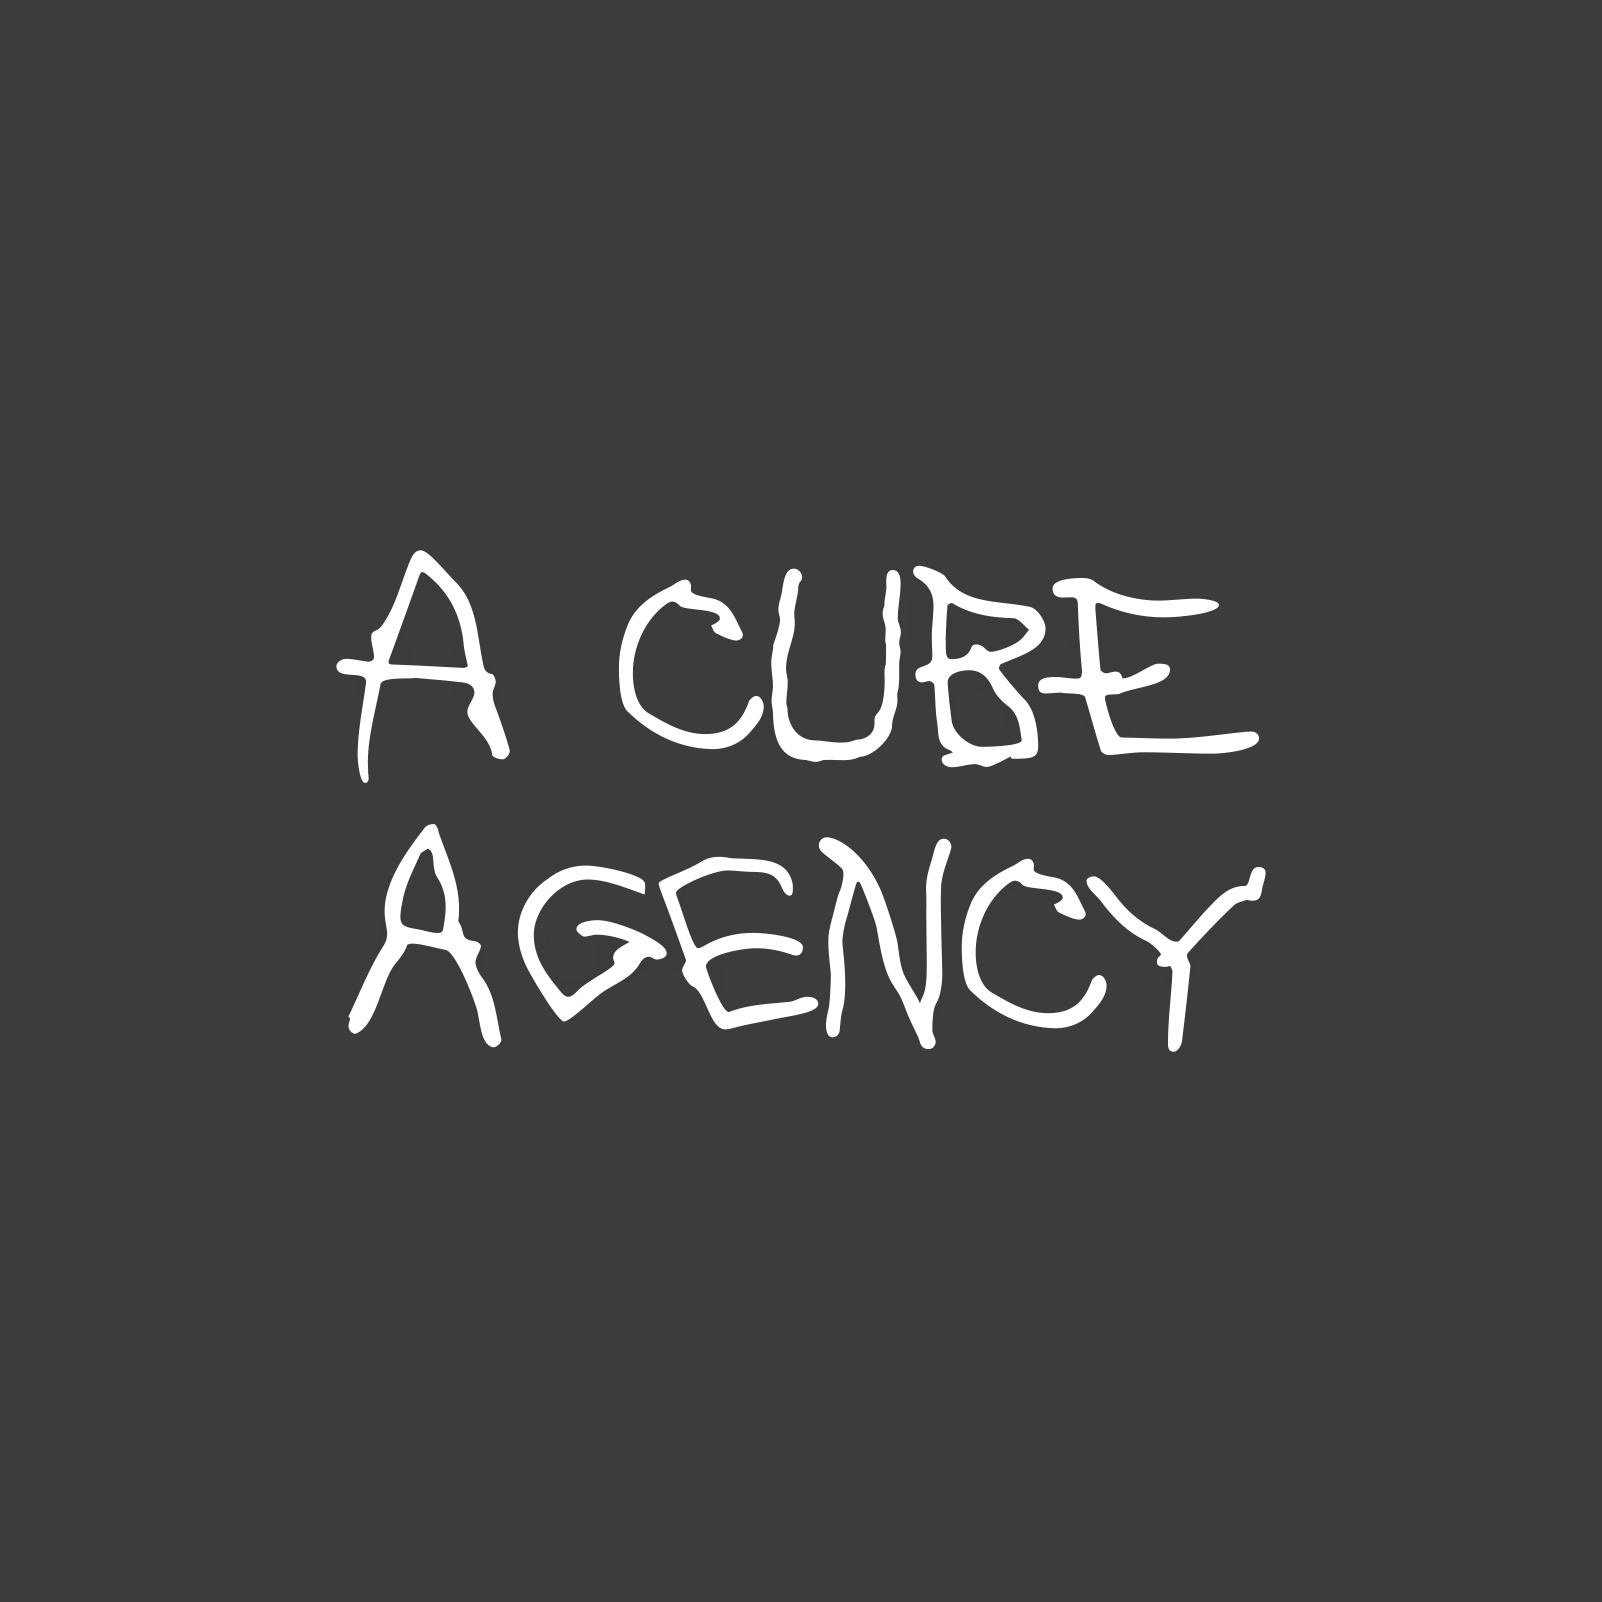 Acube Agency